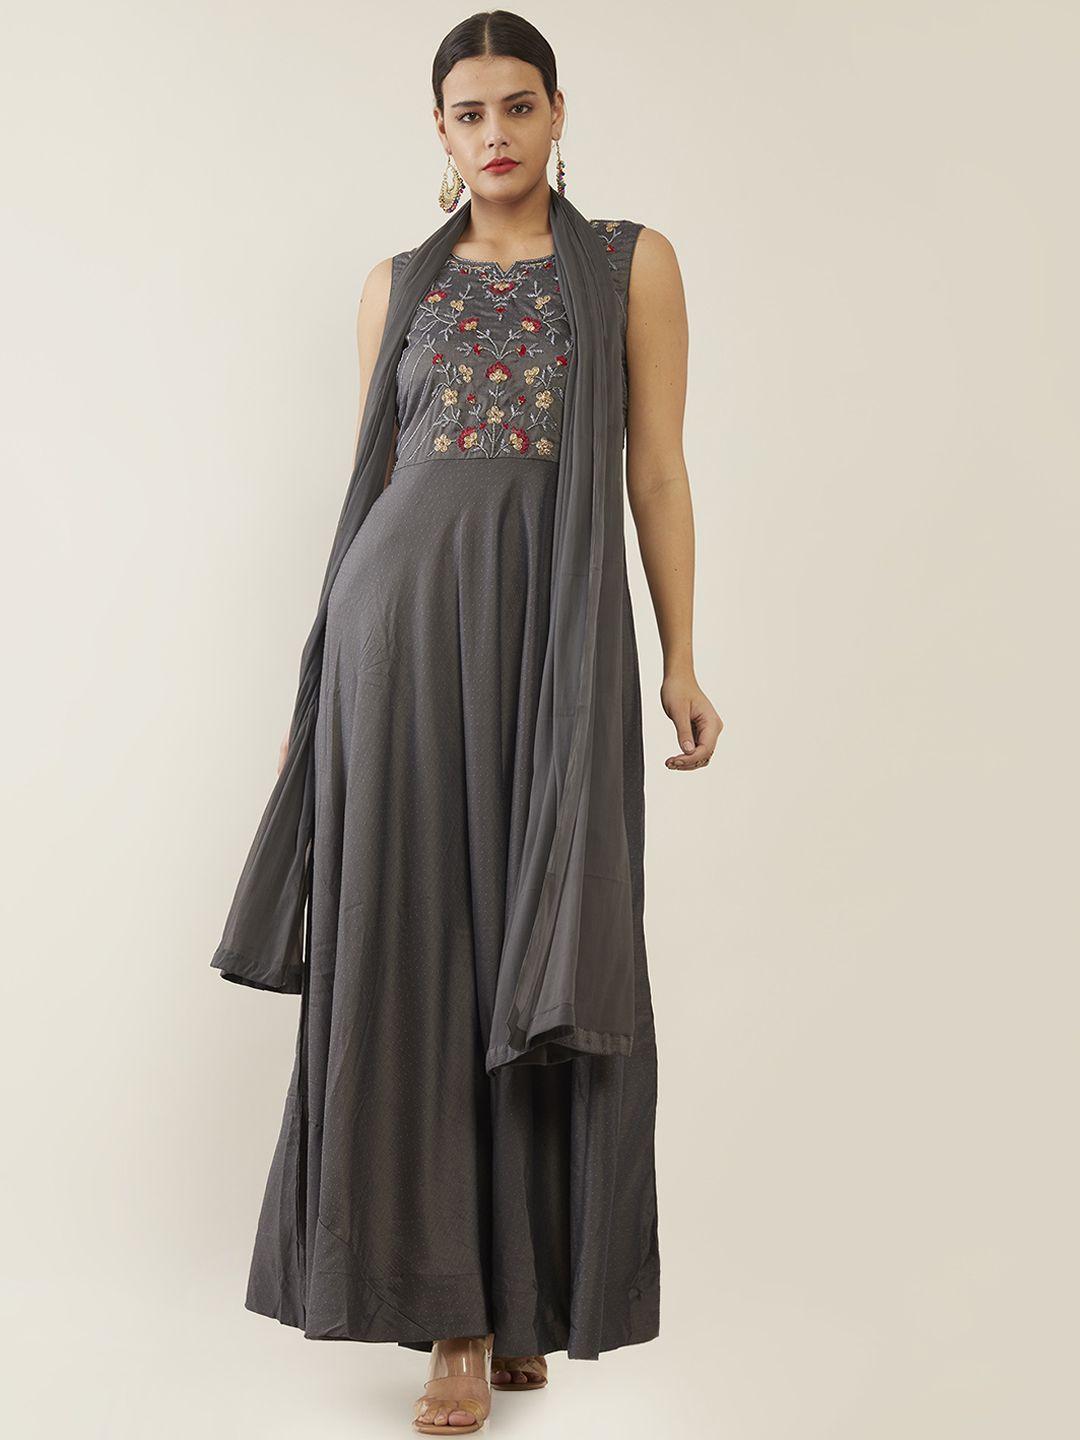 soch grey fringed ethnic maxi dress